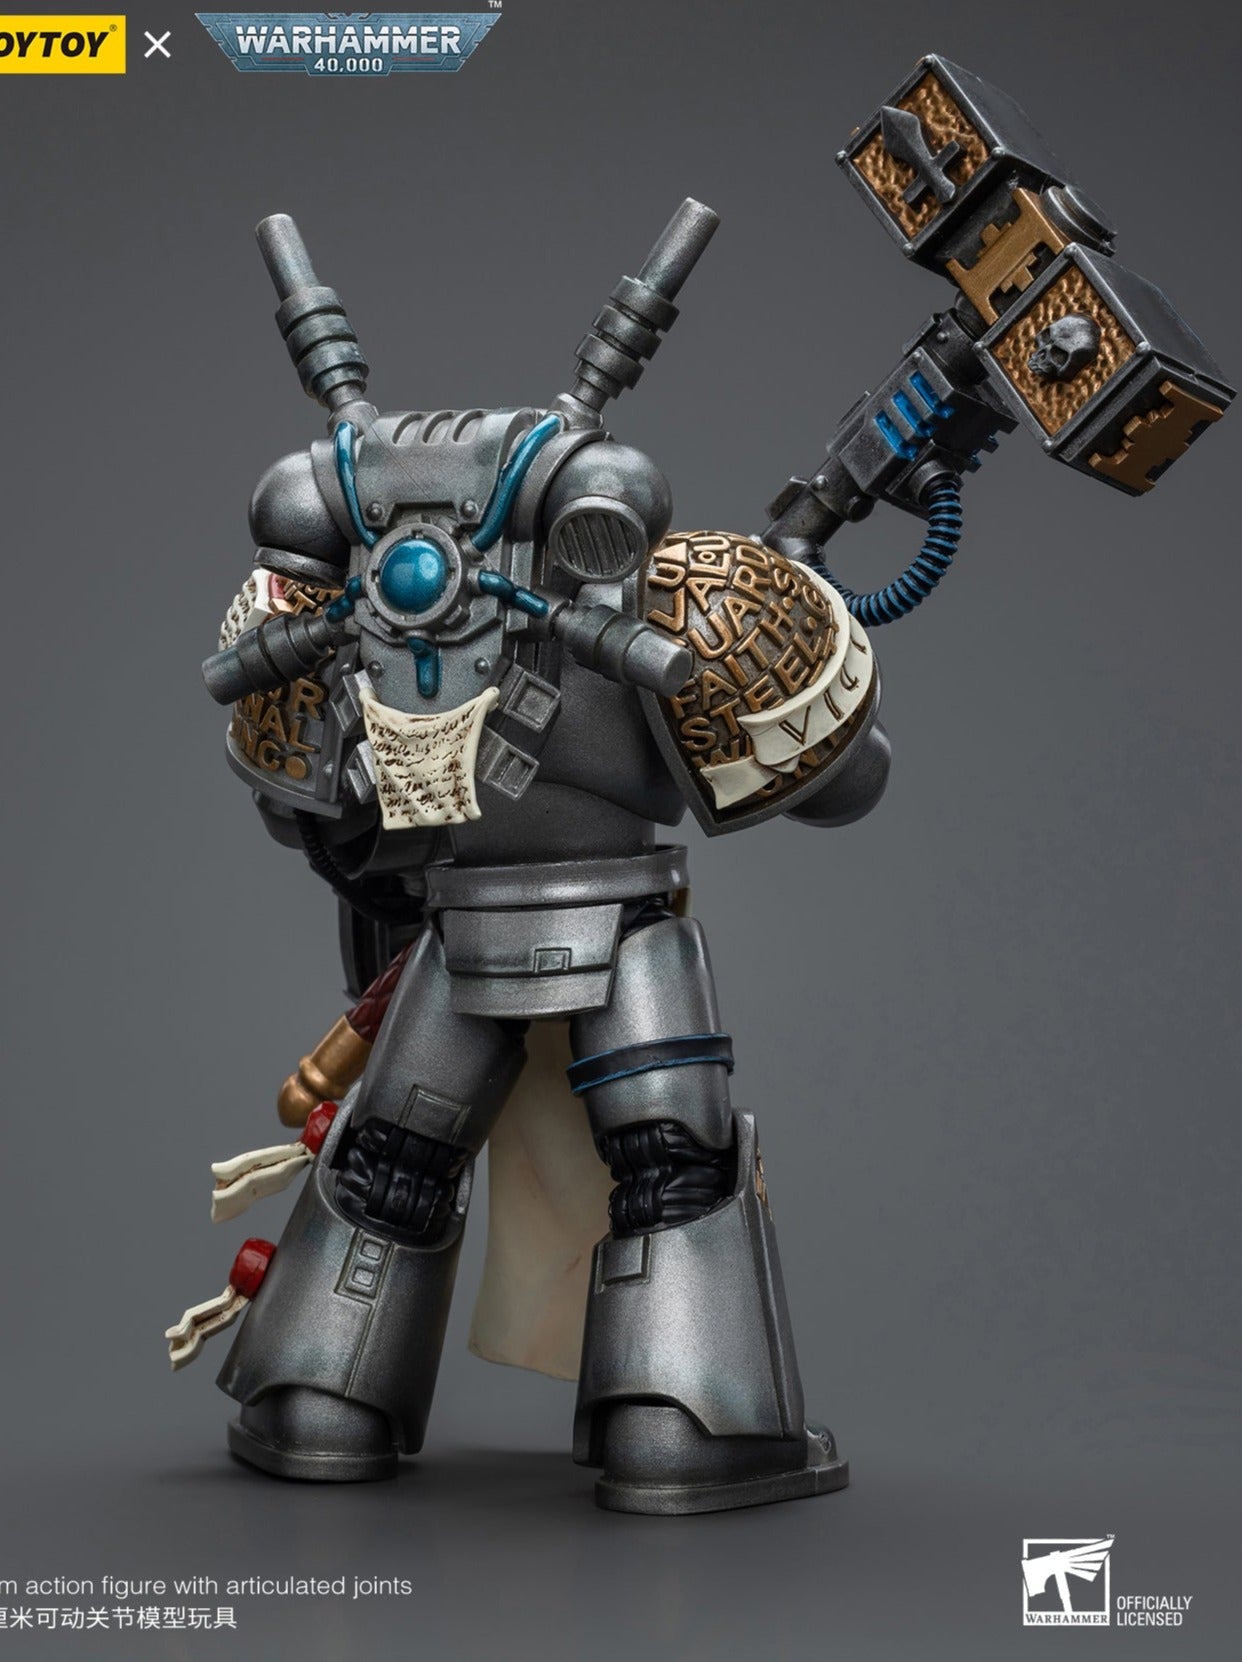 Warhammer 40k: Grey Knights: Interceptor Squad: Interceptor Justicar: Joy Toy